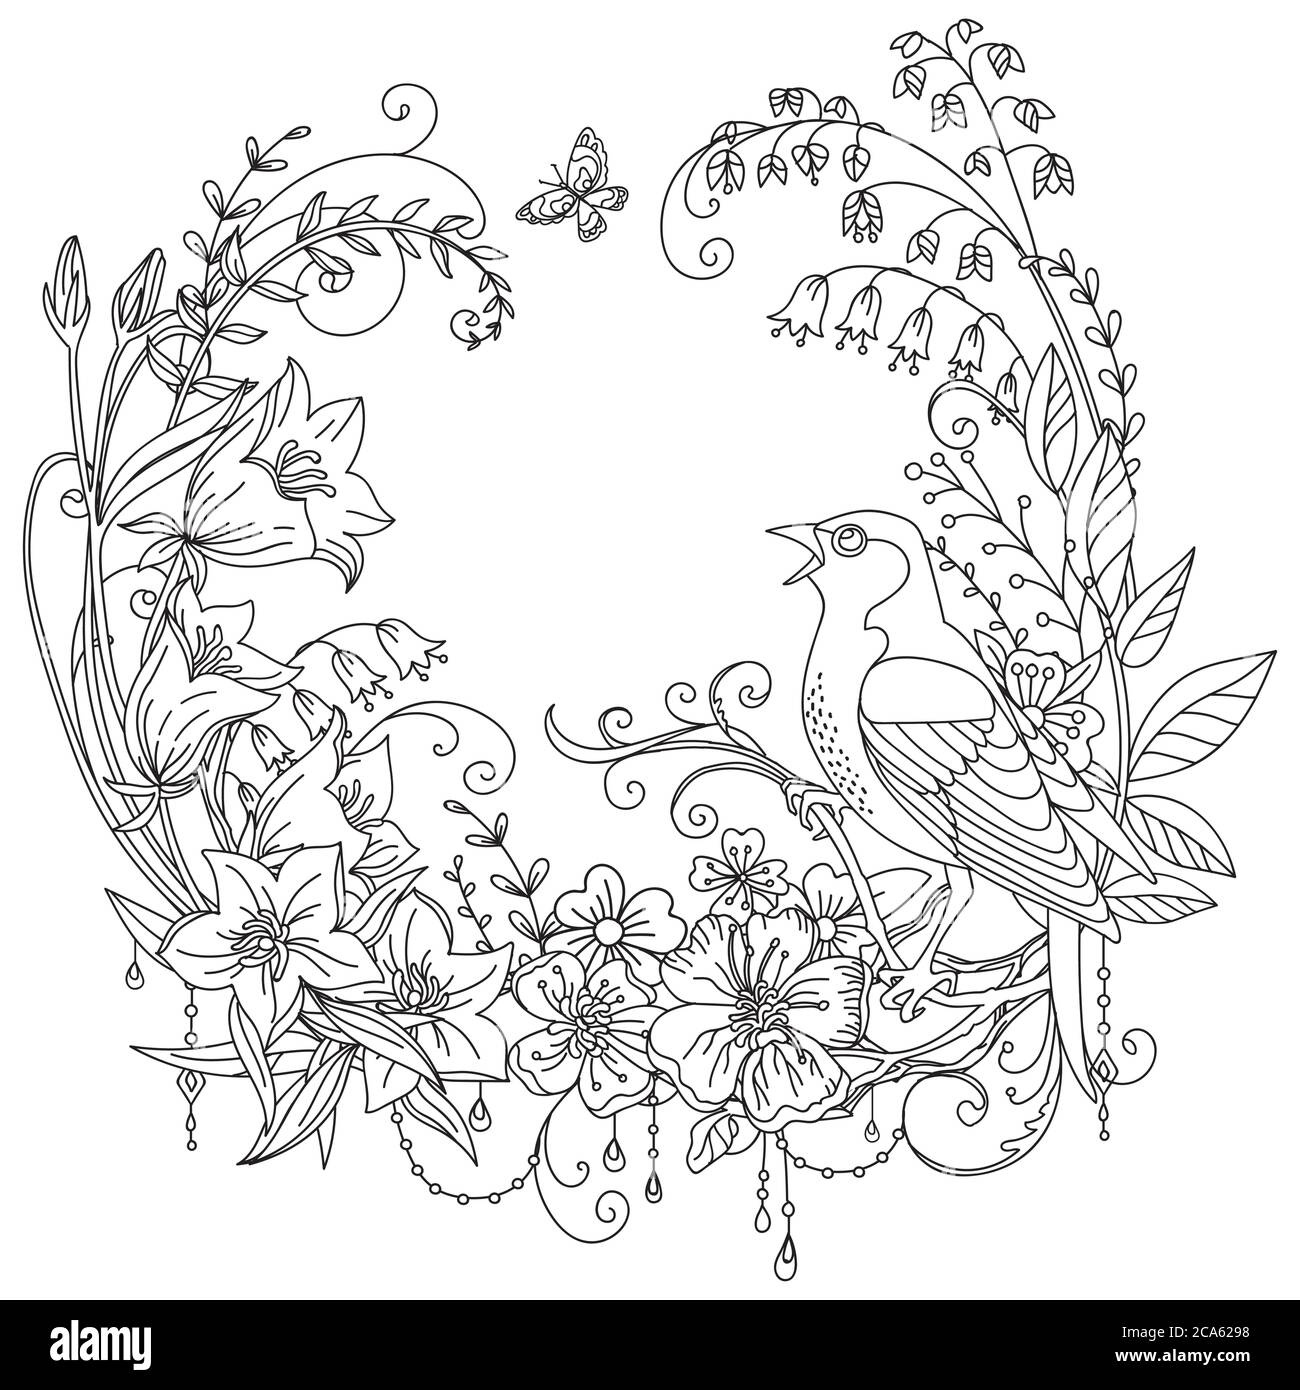 Vektor-Färbung ornamentalen wreth mit Vogel-und Wiesenblumen in Kreis-Komposition. Dekorative Abbildung schwarze Konturzeichnung isoliert auf weiß. Stock Vektor